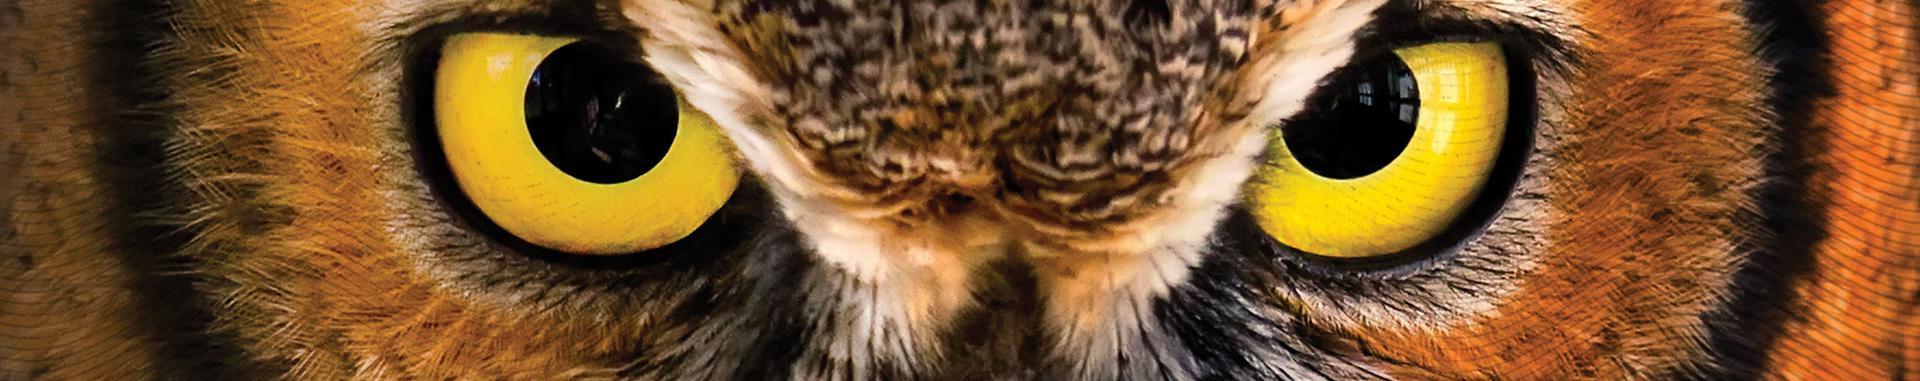 猫头鹰黄色眼睛的全景彩色特写图像. 另一张国际猫头鹰中心的水平切片照片.